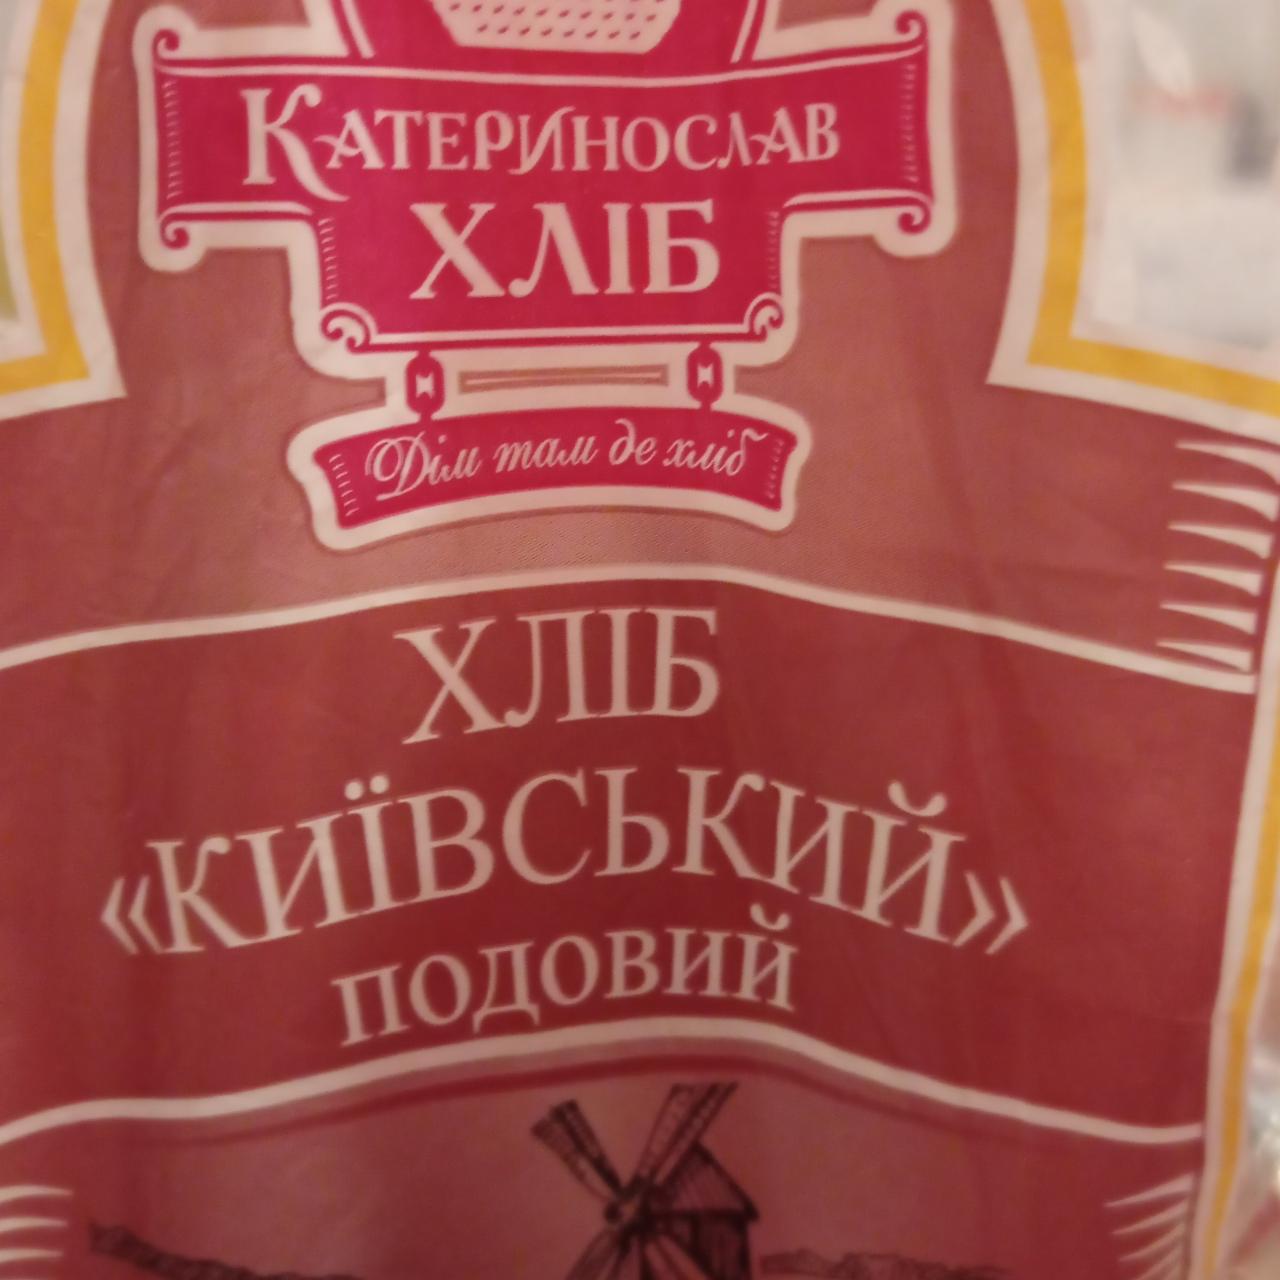 Фото - Хлеб подовой Киевский Катеринослав хліб